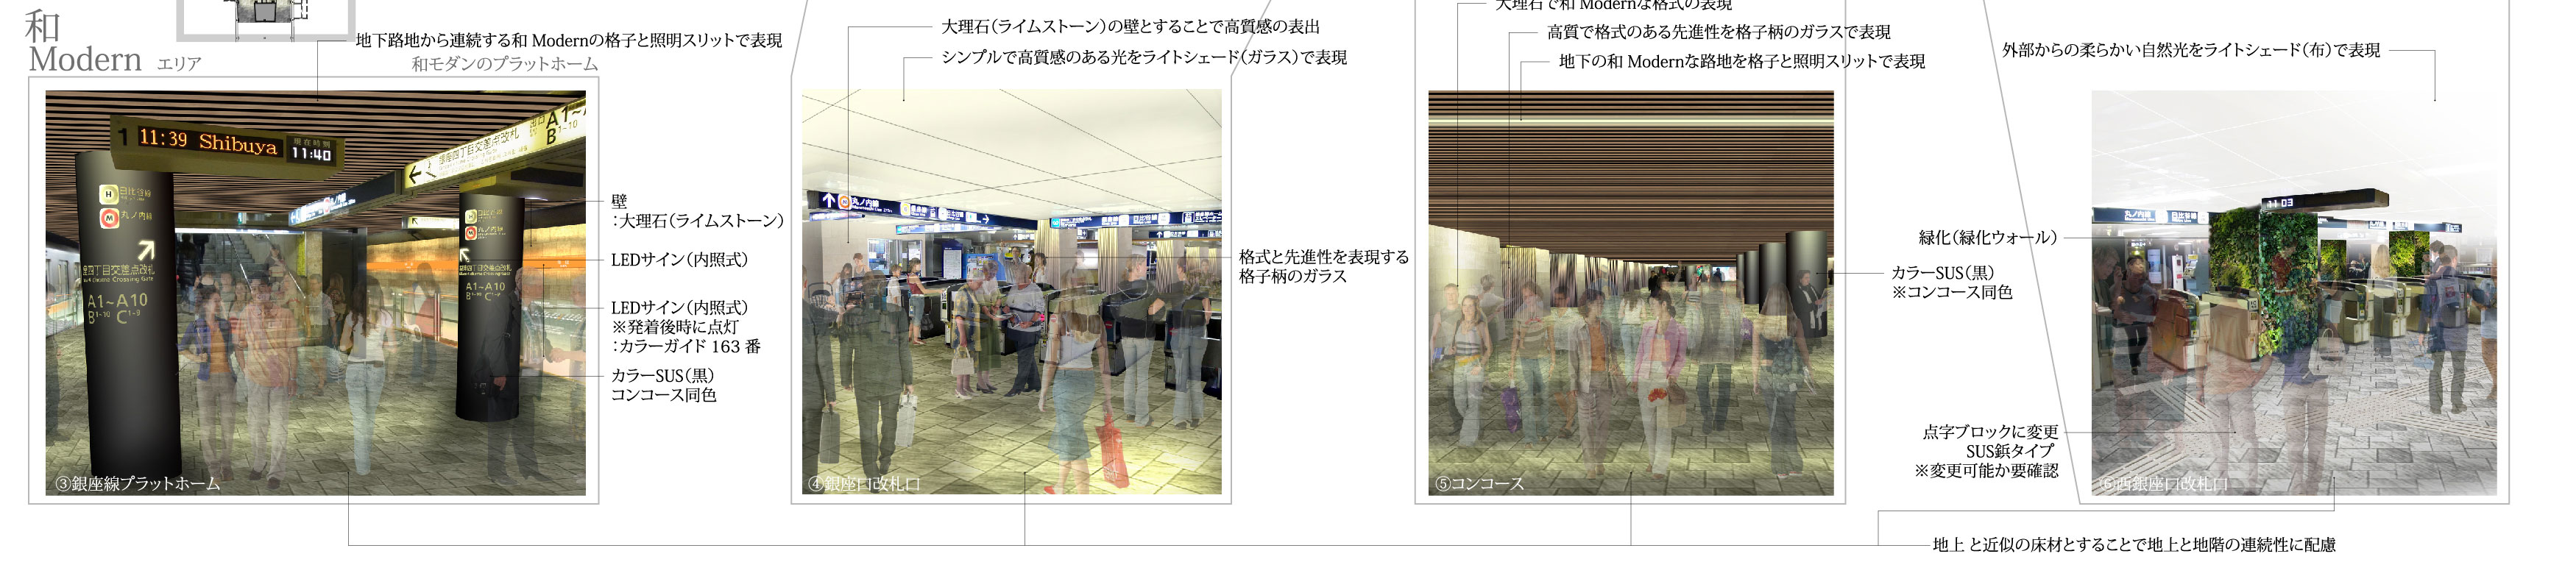 2020年東京オリンピッックに向けての銀座駅改修提案